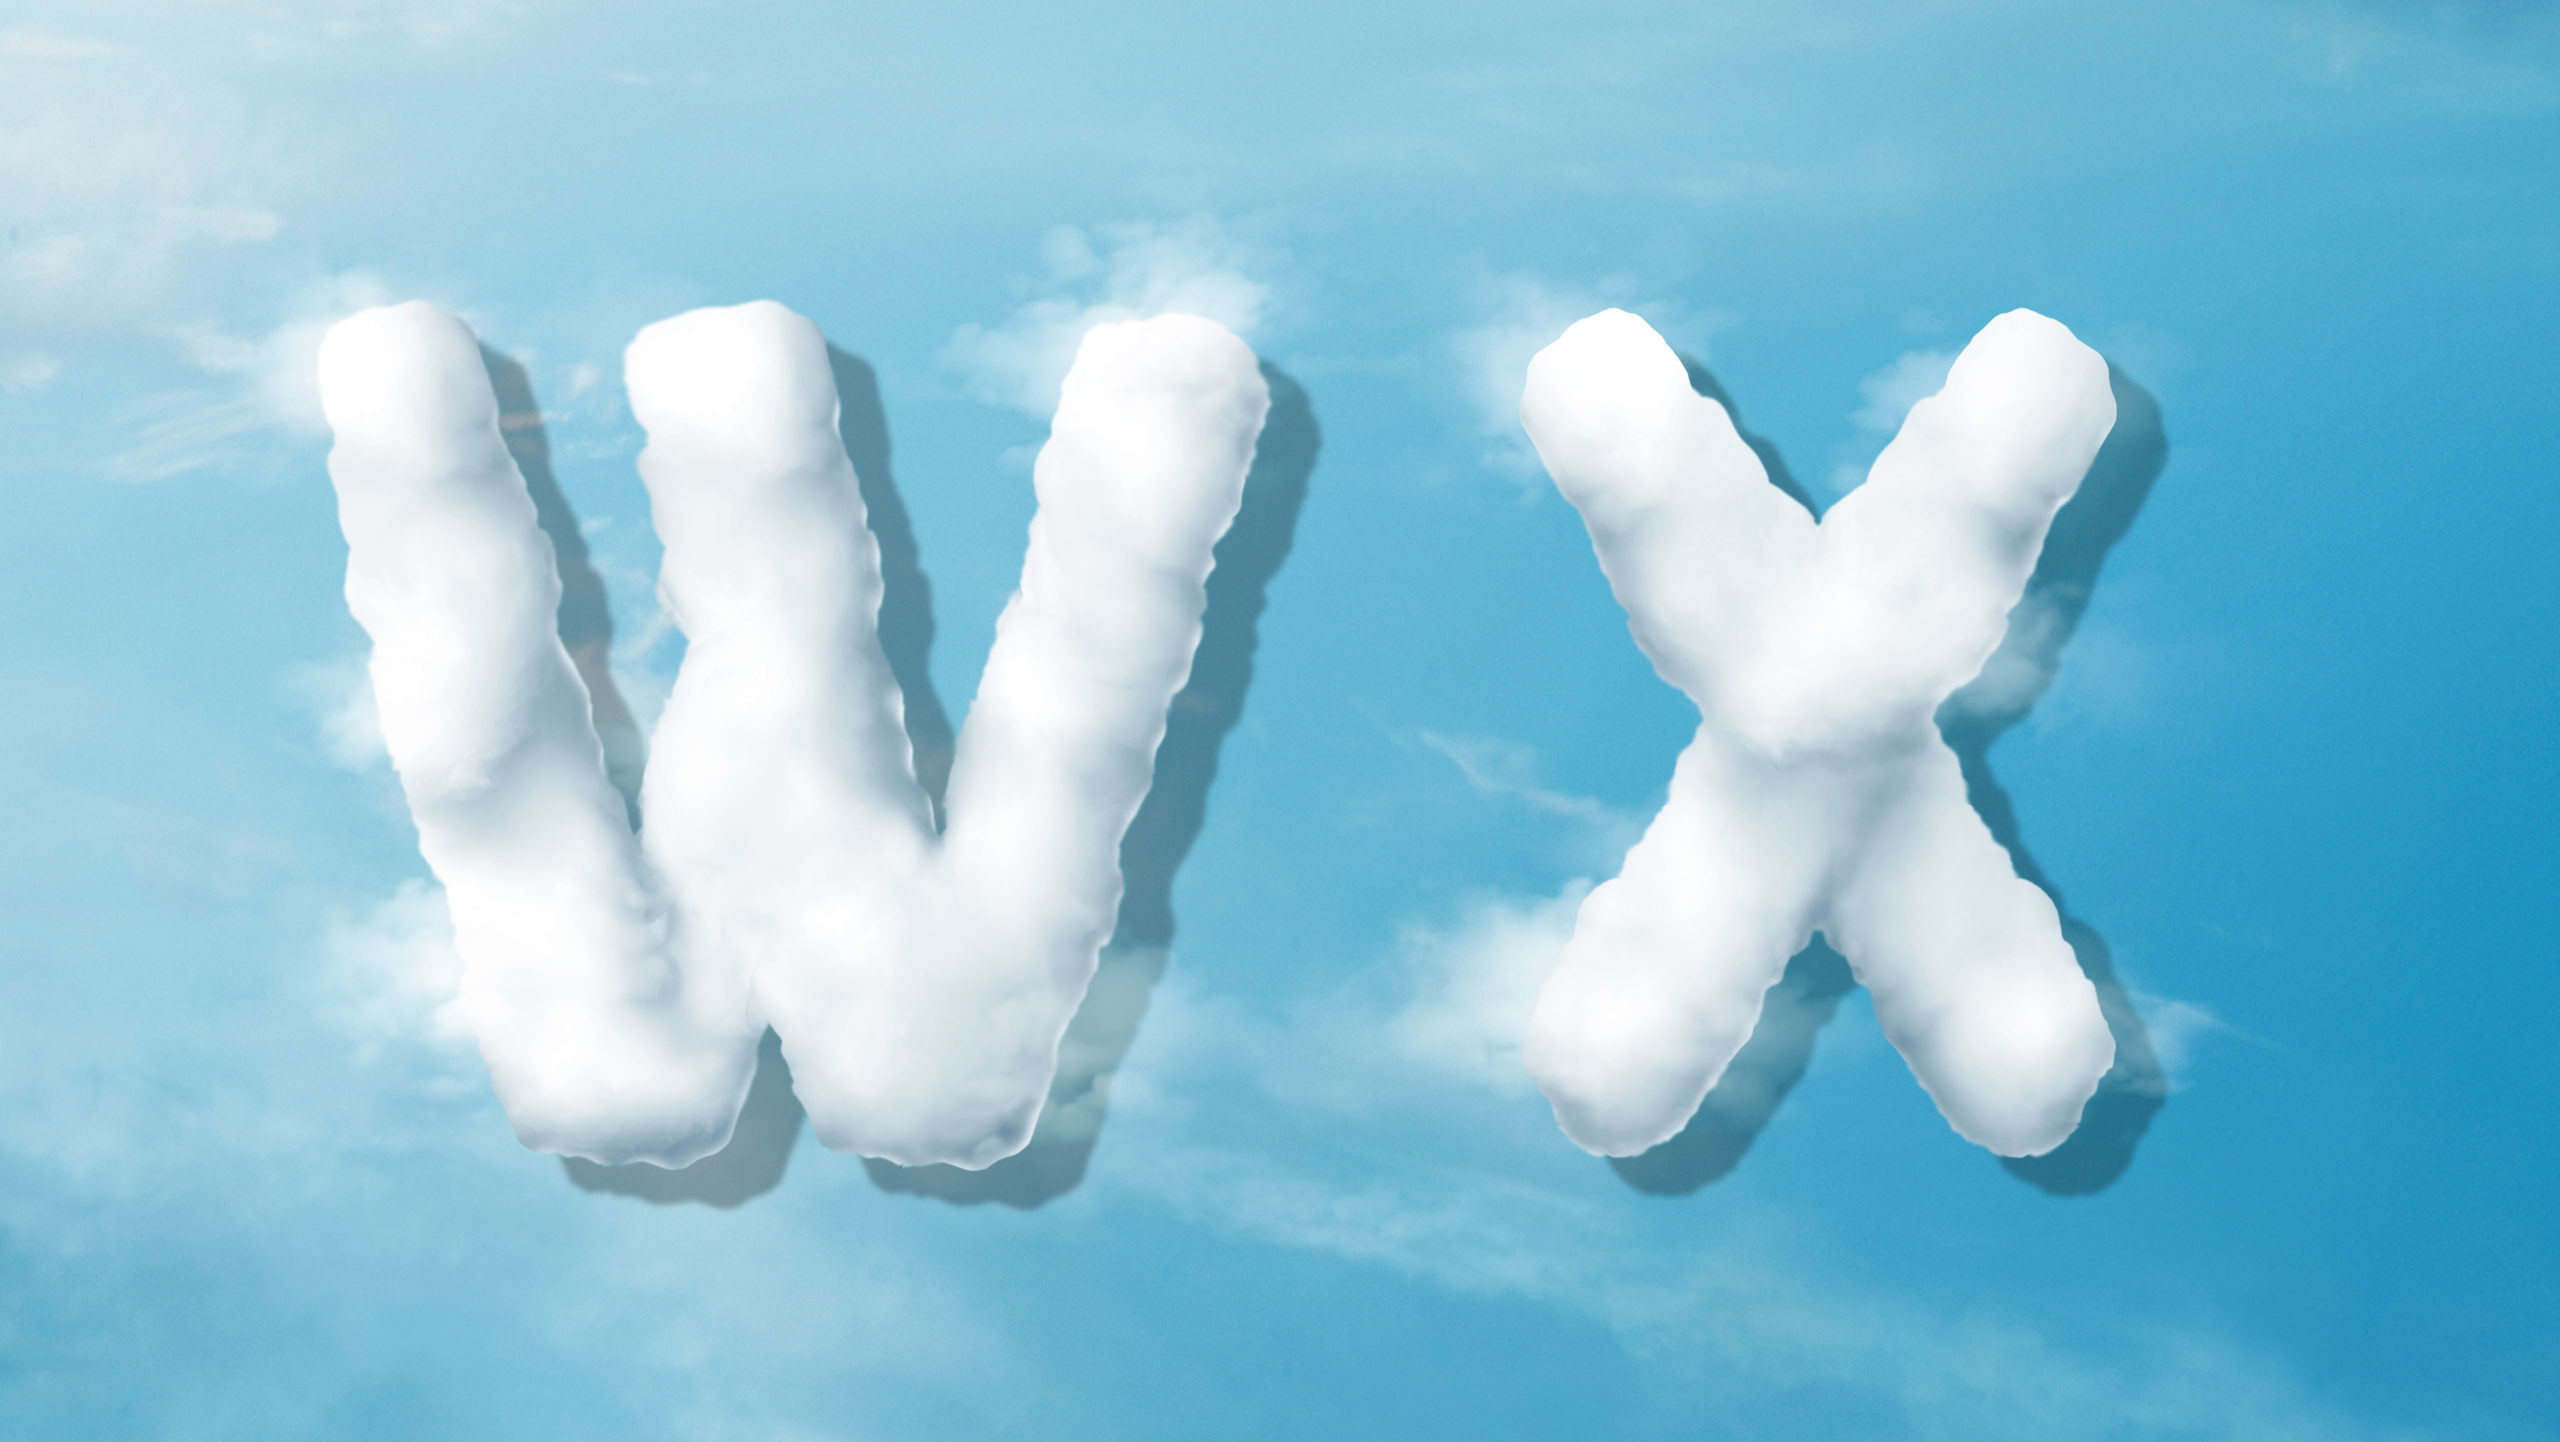 字母“WX”蓝天背景白云英文艺术字体蚂蚁素材精选PSD素材插图